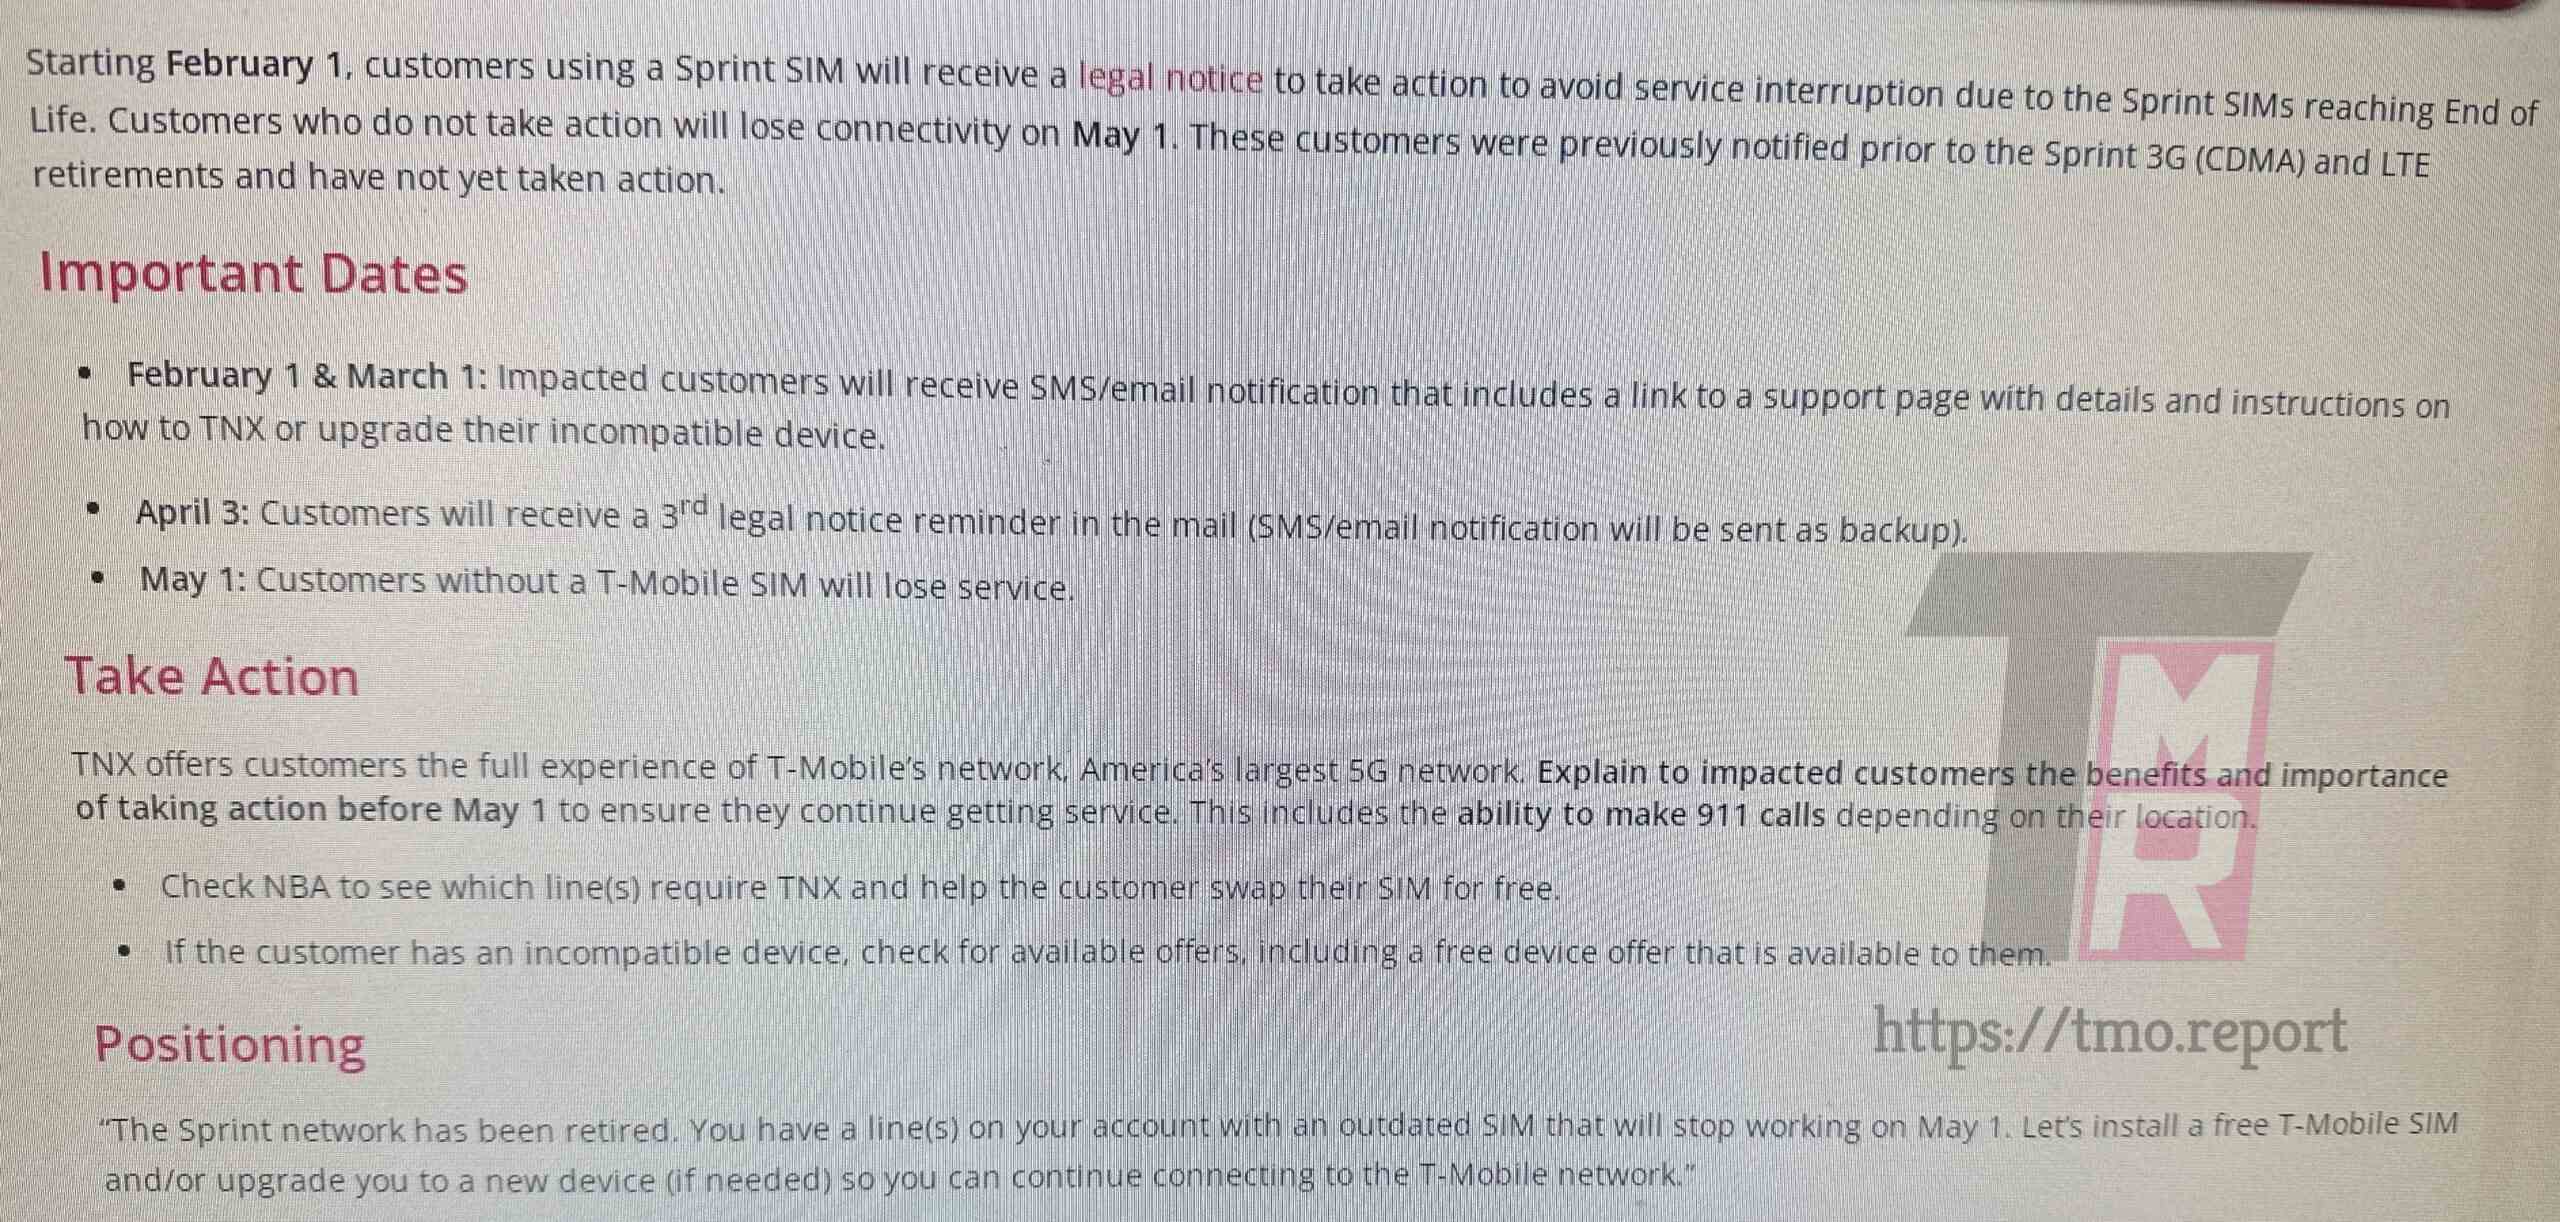 Kaynak - T-Mo Raporu - T-Mobile, bekleyen Sprint müşterilerine 1 Mayıs'a kadar T-Mobile SIM kartına geçmelerini hatırlatıyor.